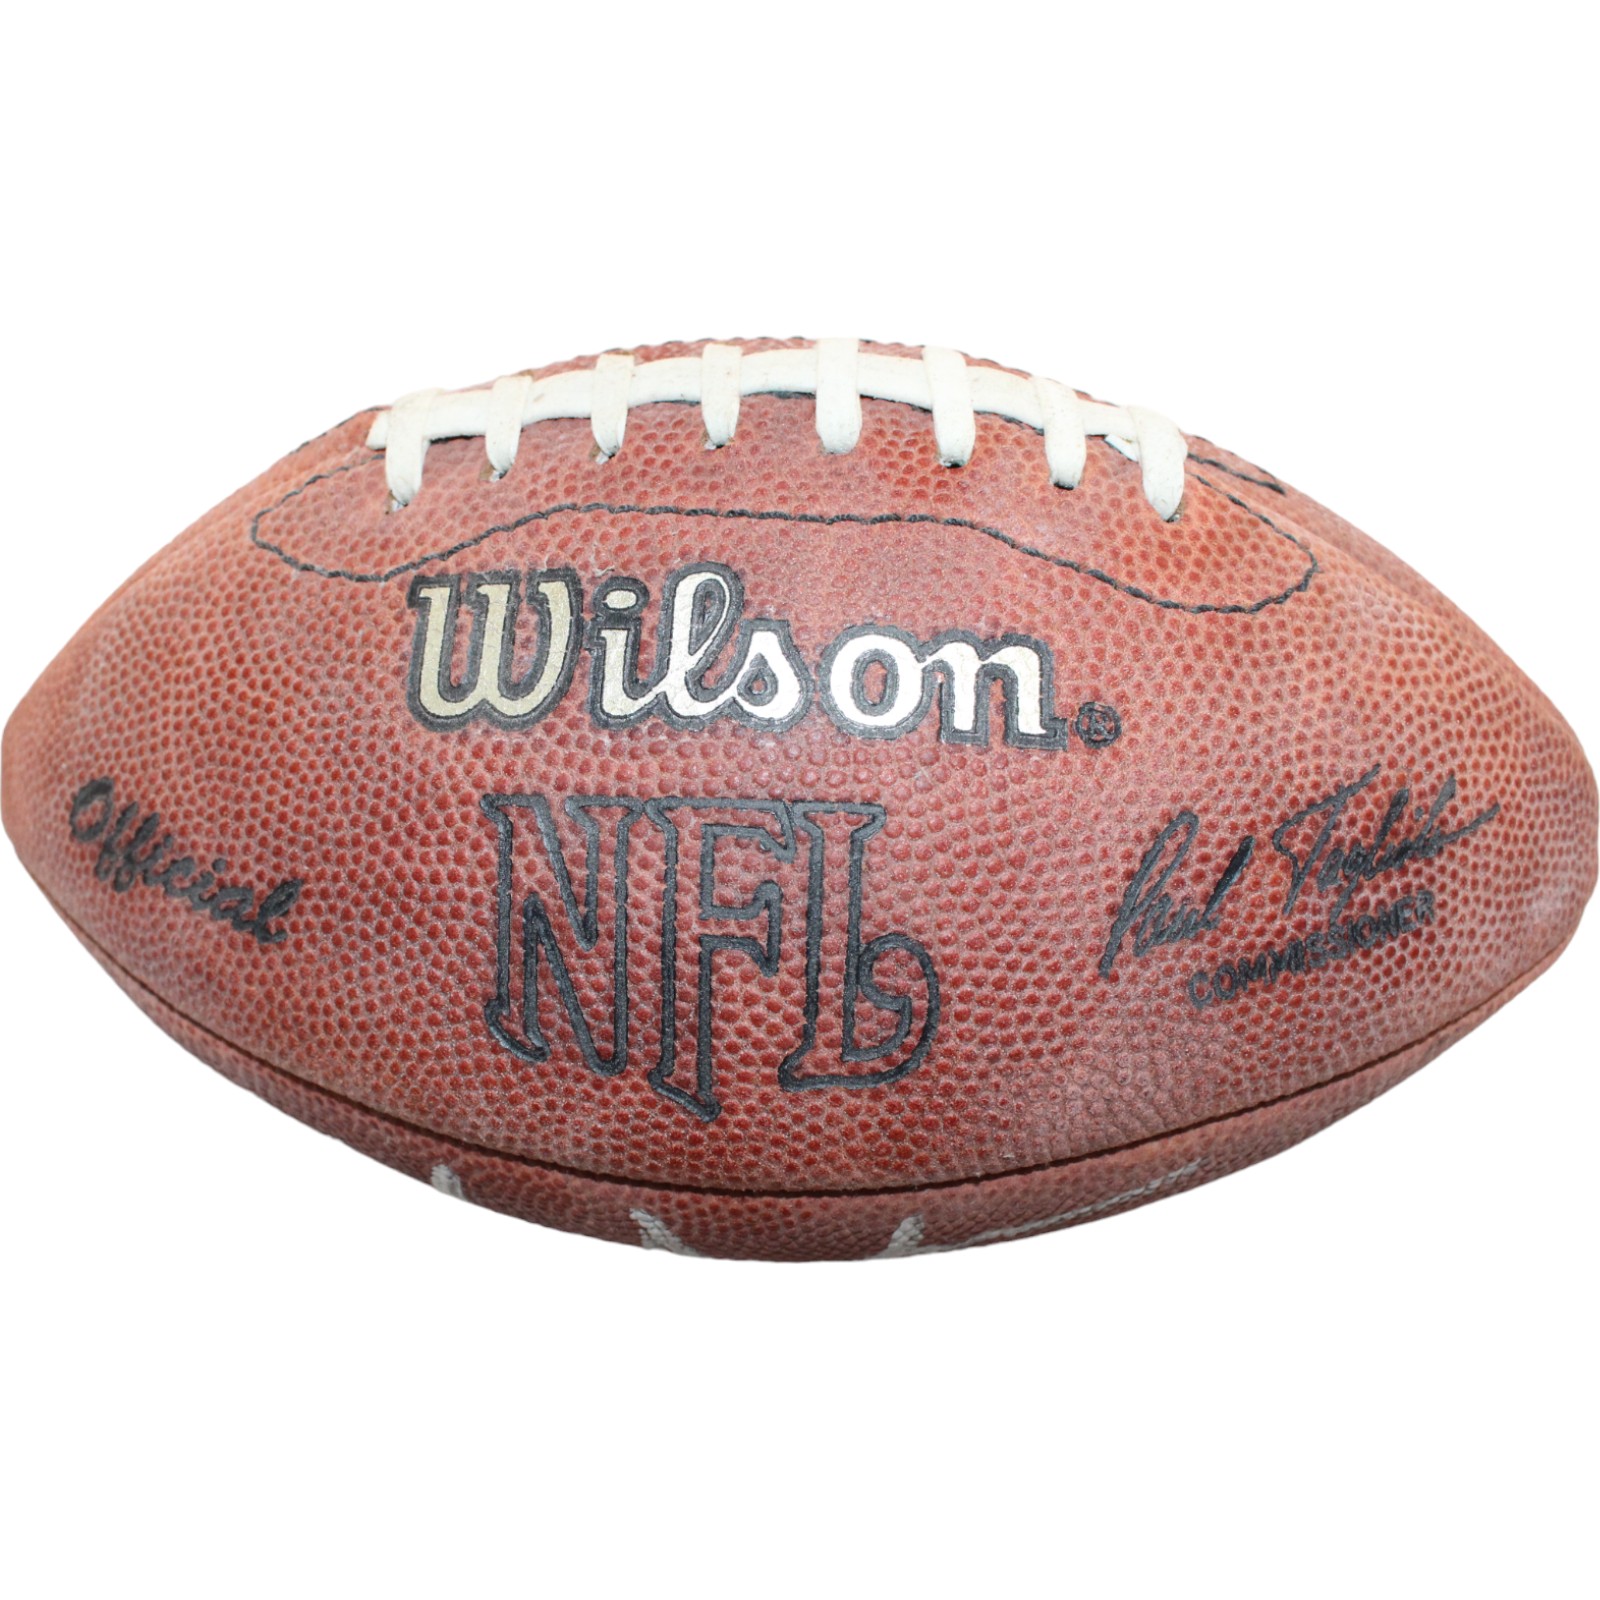 Tom Jackson Autographed/Signed Wilson Leather Mini Football Beckett 44310